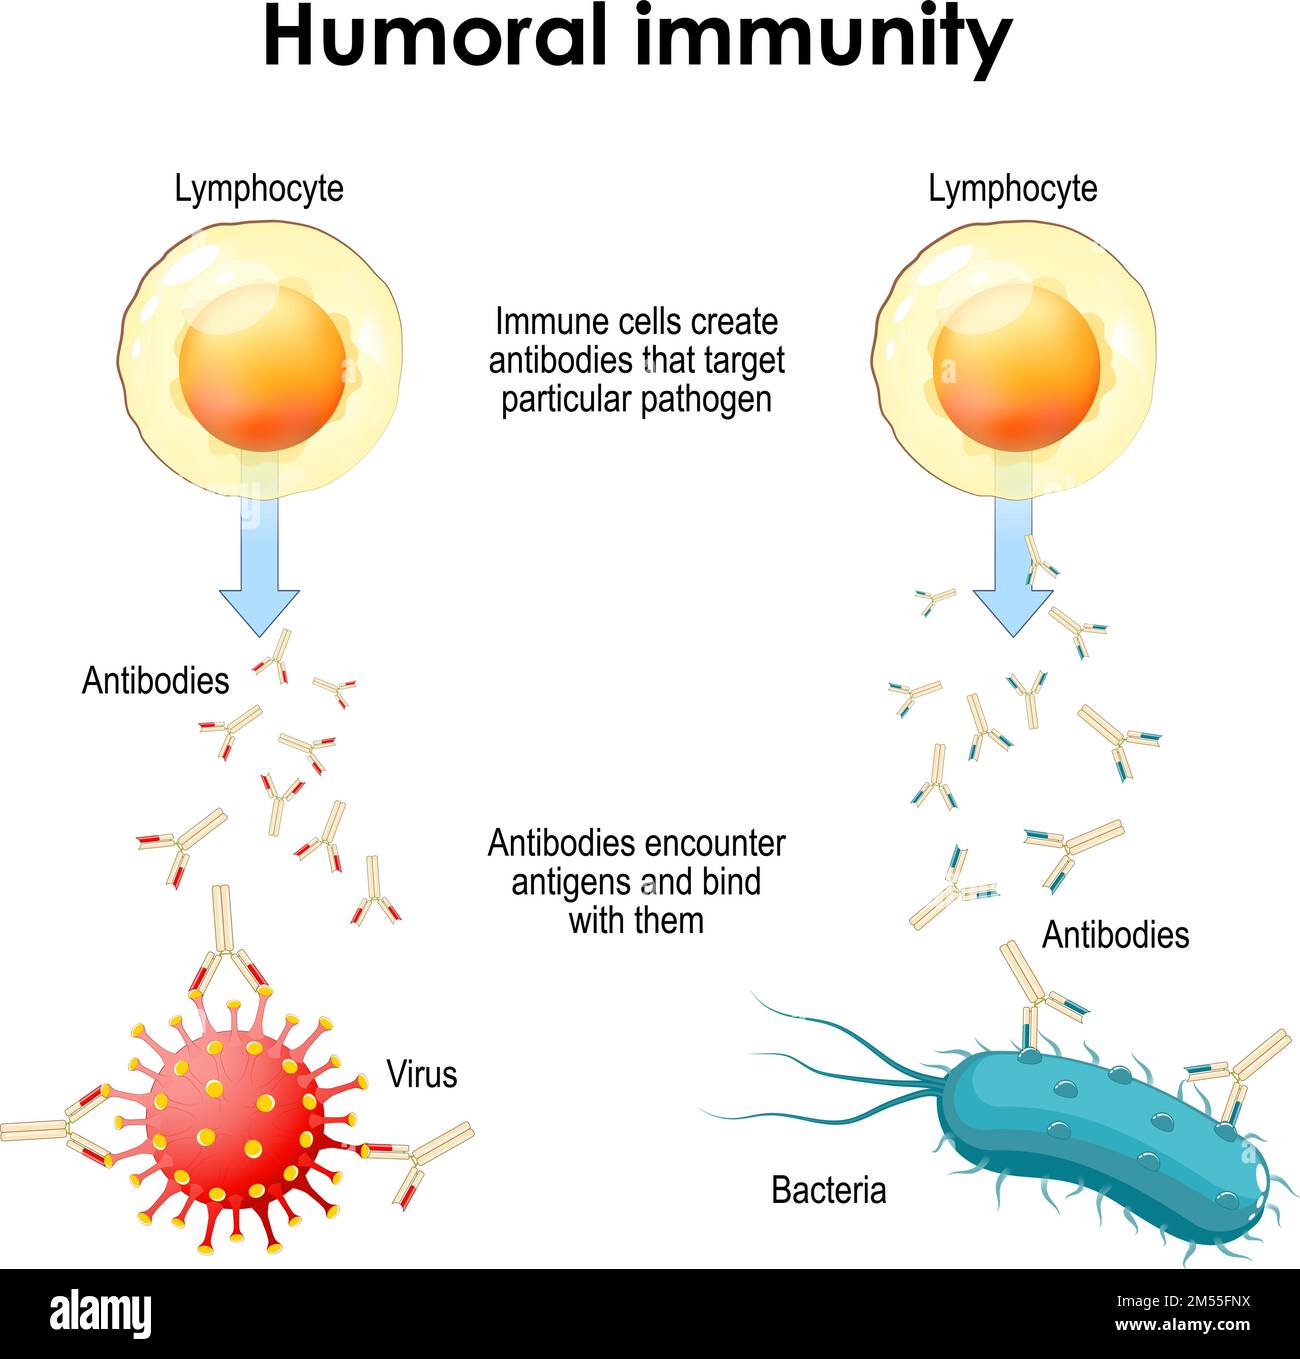 Humorale Immunität. Bakterien, Viren, Lymphozyten und Antikörper. Immunzellen bilden Antikörper, die auf bestimmte Krankheitserreger abzielen Stock Vektor